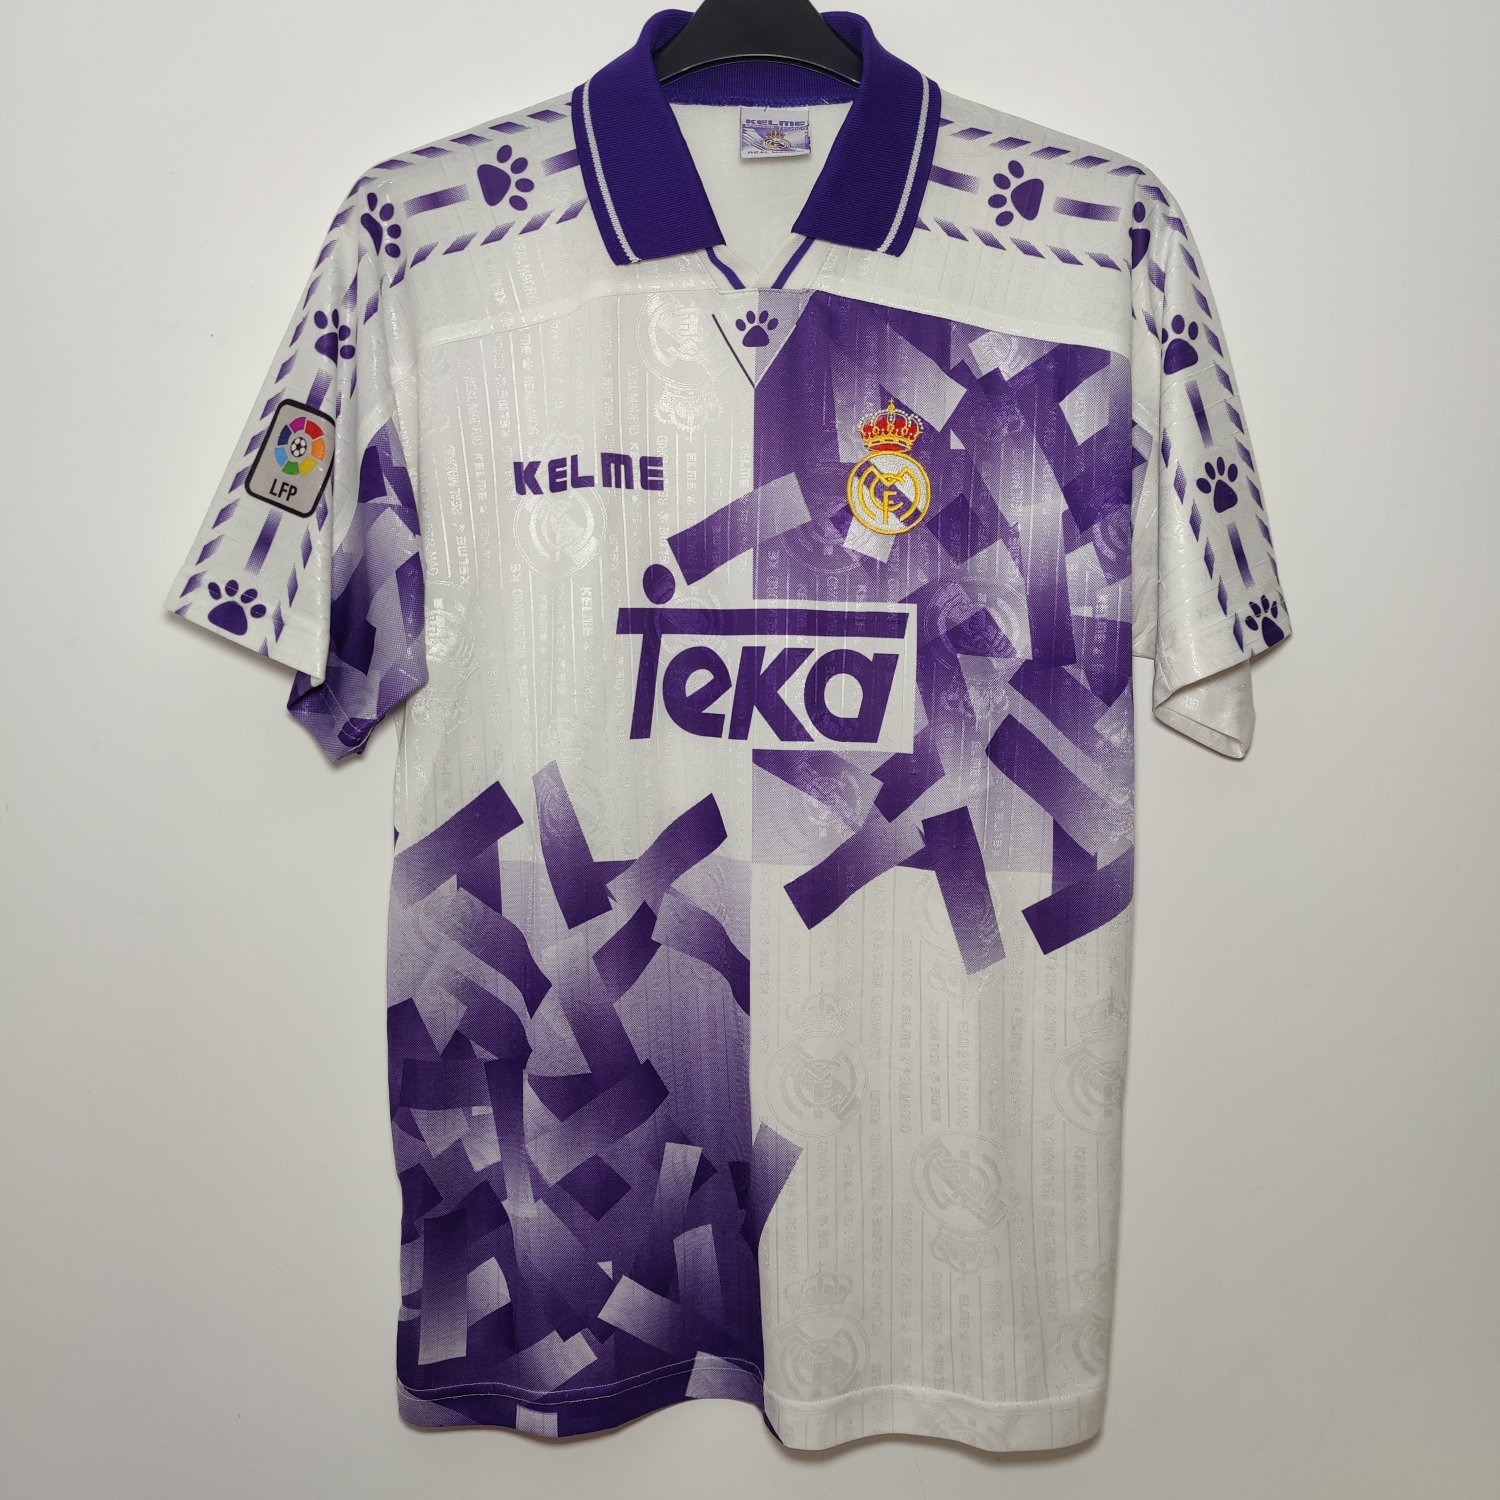 Real Madrid Il Terzo maglia di calcio 1996 - 1997.